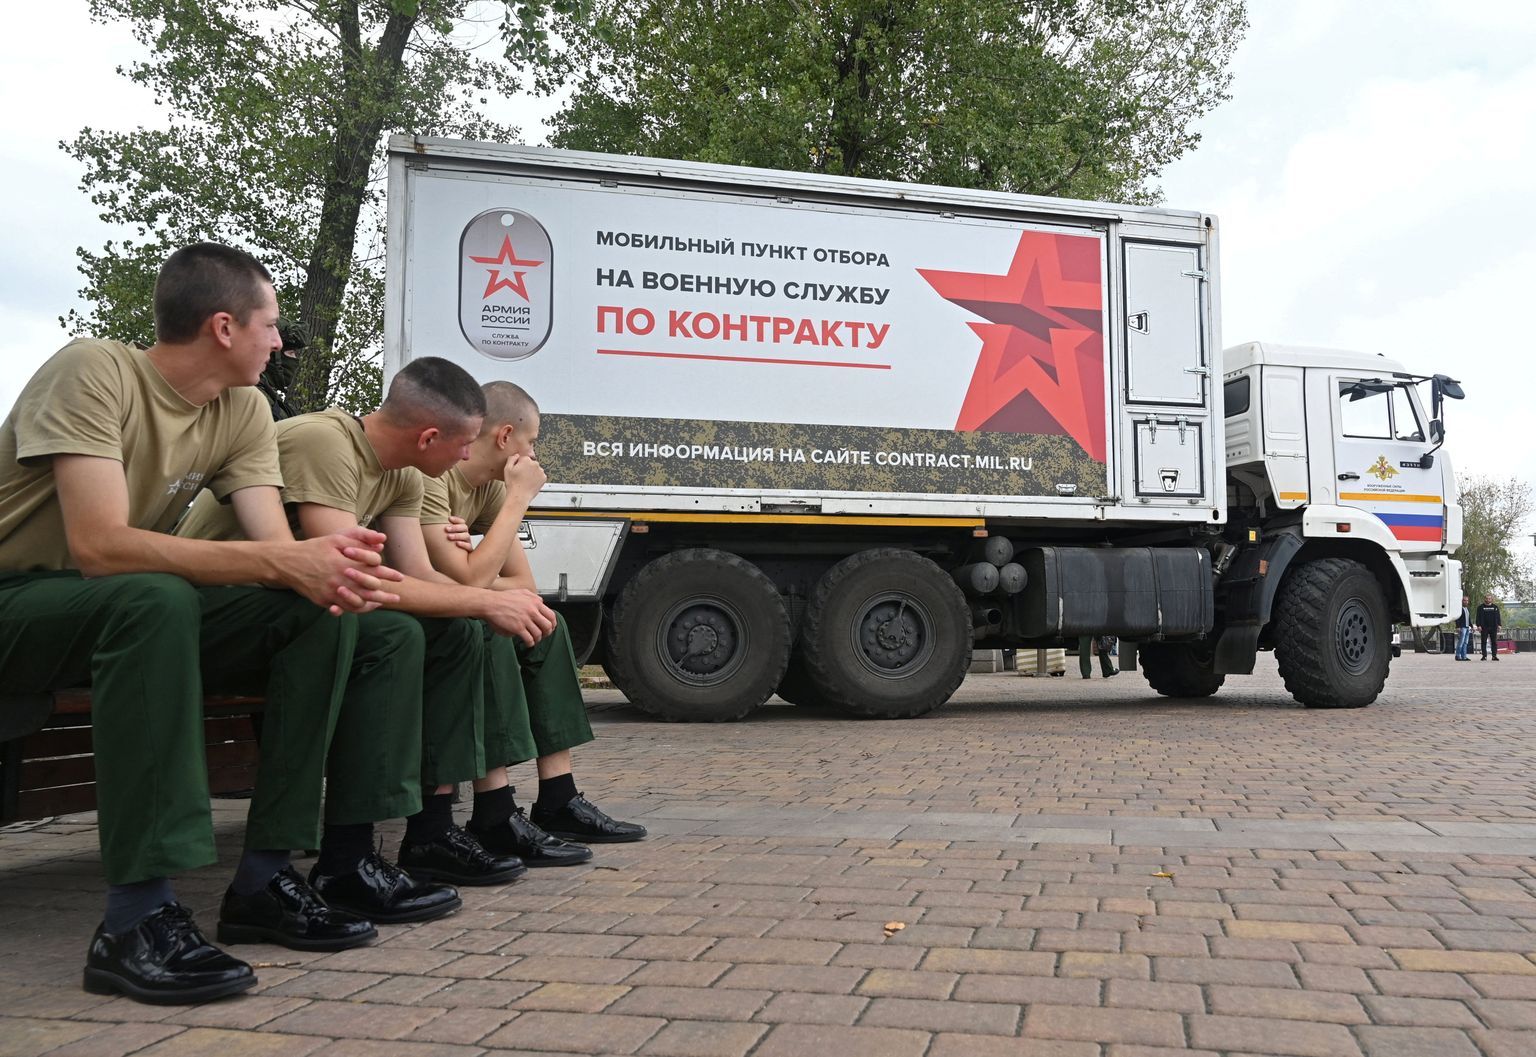 Российские военнослужащие сидят рядом с мобильным призывным пунктом для прохождения военной службы по контракту в Ростове-на-Дону, Россия, 17 сентября 2022 года